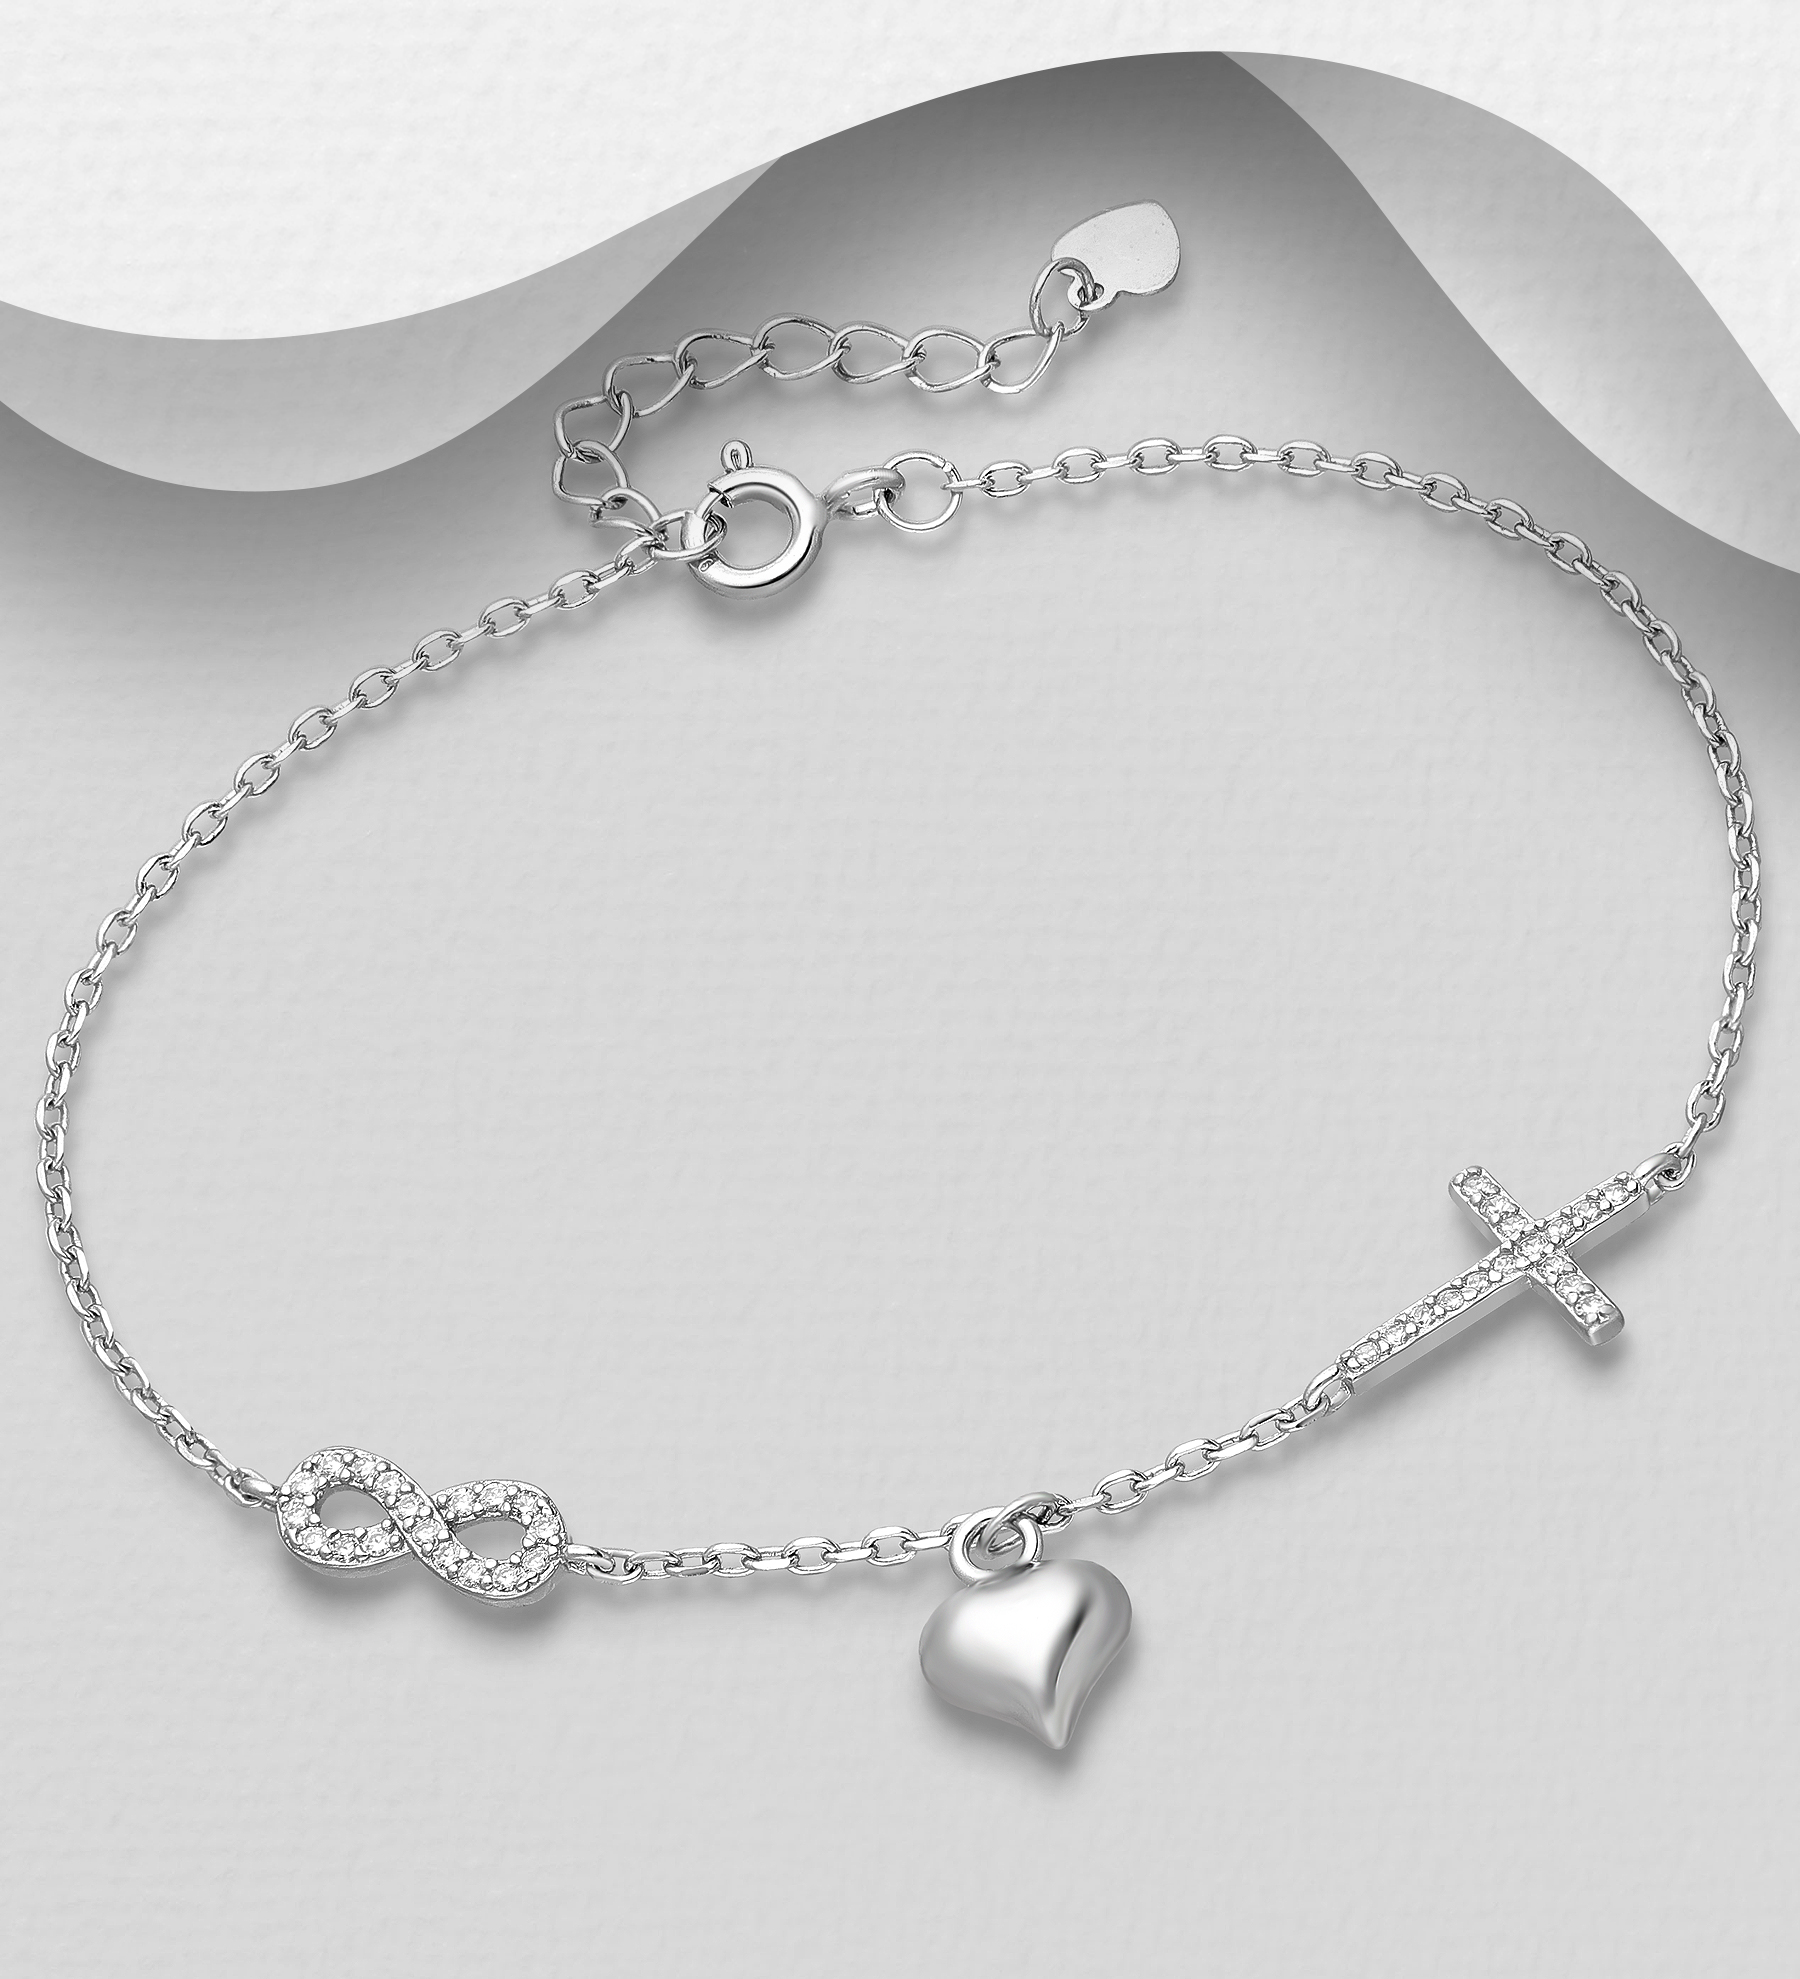 Silverarmband med Hjärta, Kors & Evighetstecken - elegant armband till tjej/ dam i äkta 925 sterling silver